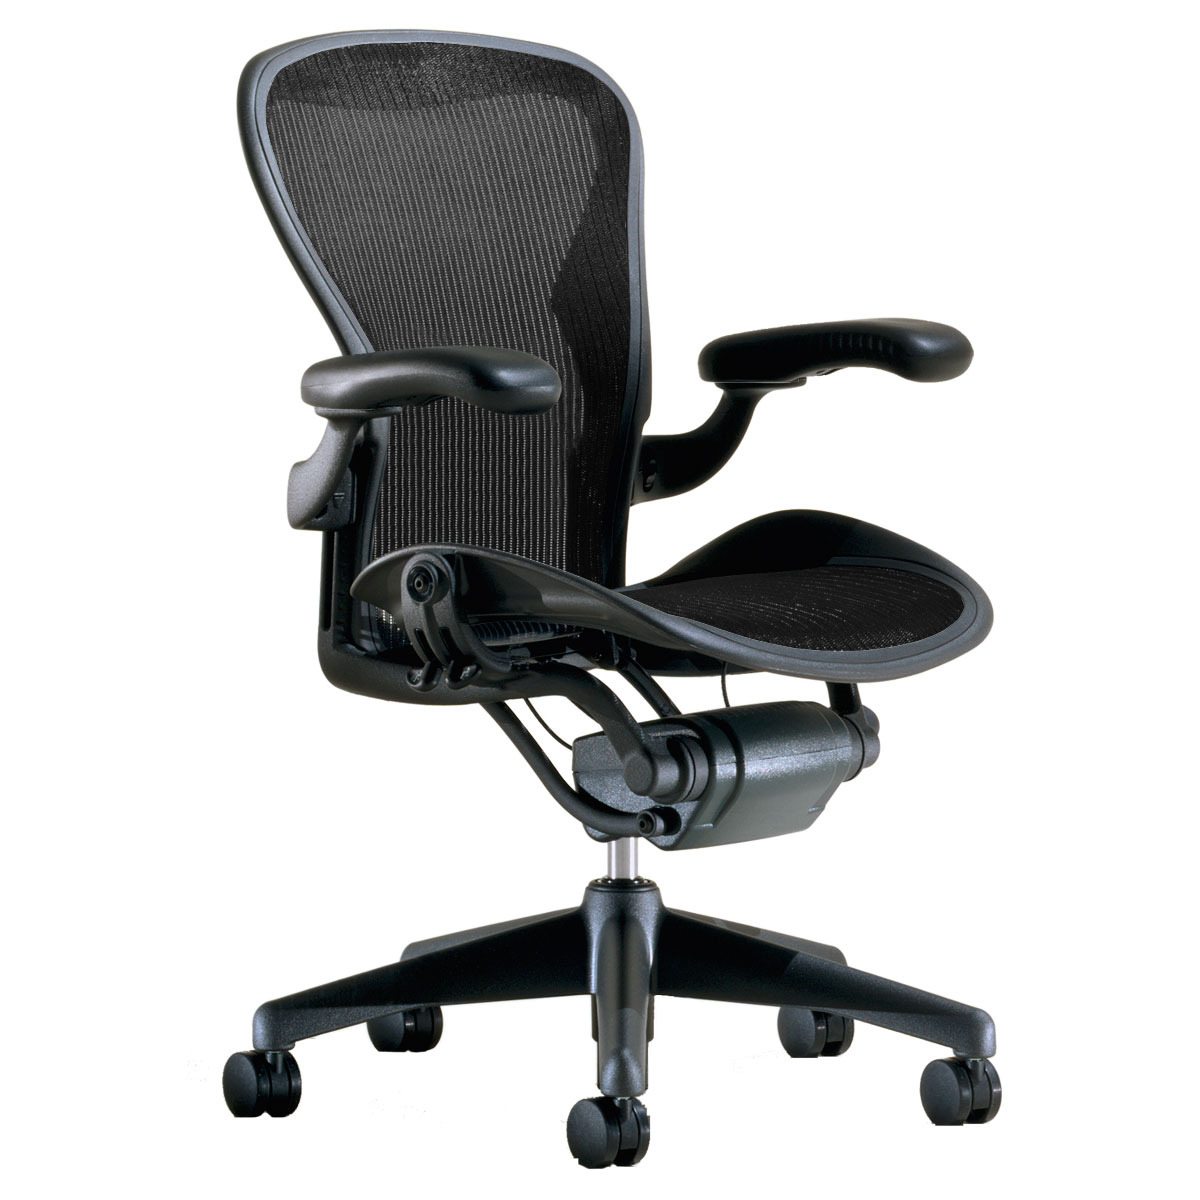 ergonomic office chair #5 pick herman miller aeron office chair - best mesh office chair ZZOMOHA